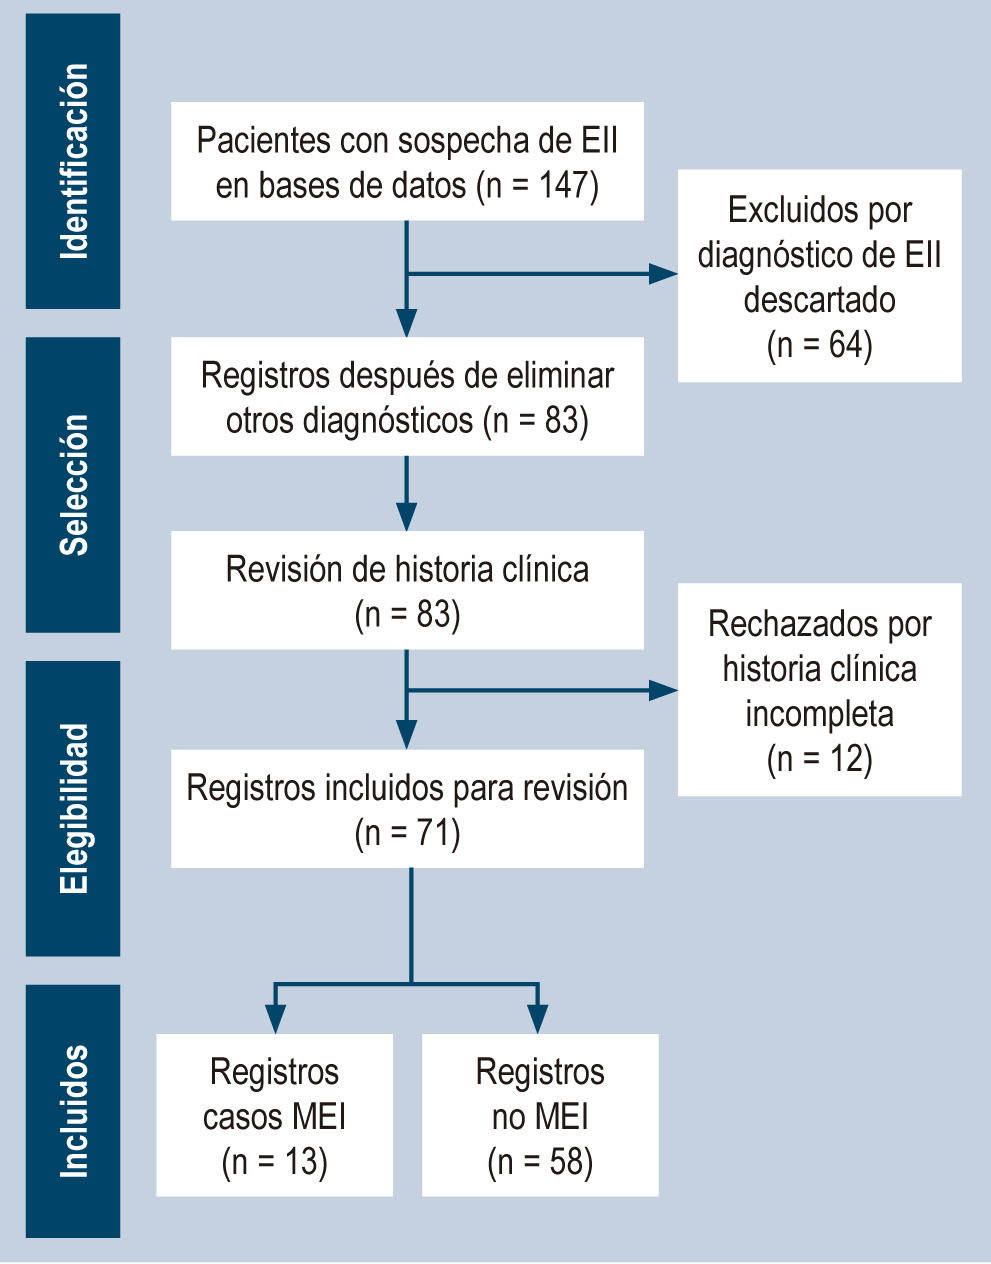 Figura 1. Flujograma de elegibilidad de registros. EII: enfermedad inflamatoria intestinal; MEI: manifestaciones extraintestinales. Imagen propiedad de los autores.